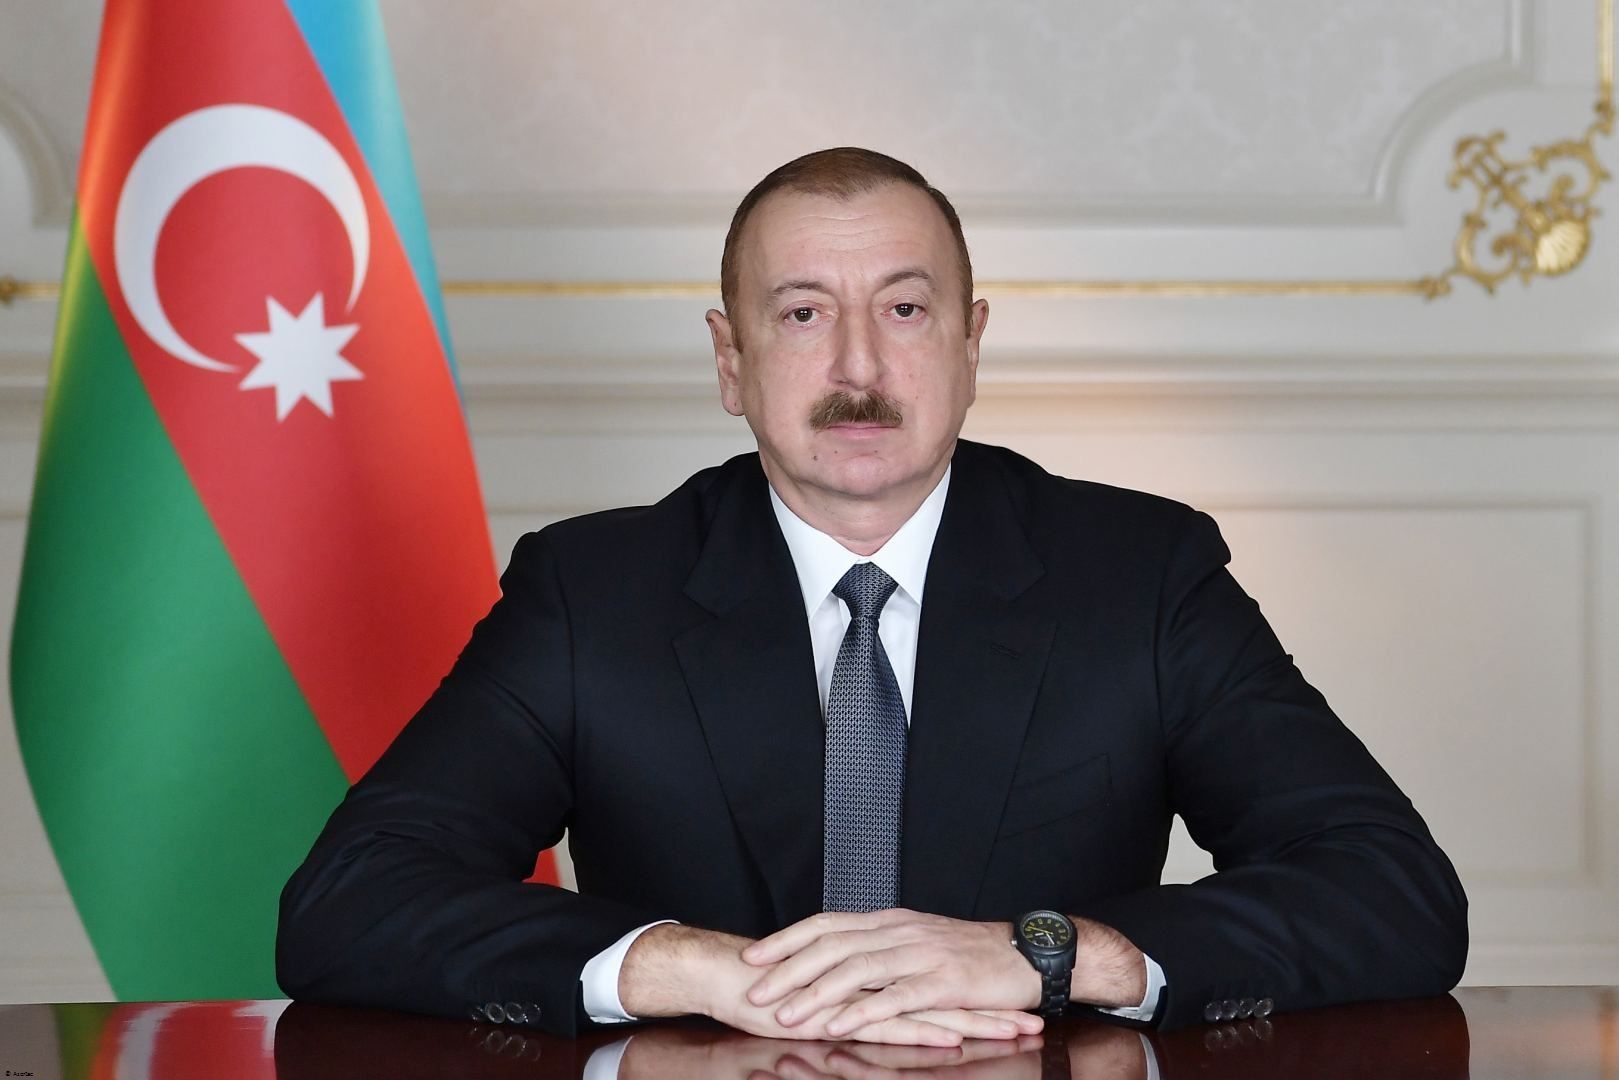 Ilham Aliyev : Aujourd'hui comme toujours, le gouvernement et le peuple azerbaïdjanais sont solidaires avec le peuple turc frère